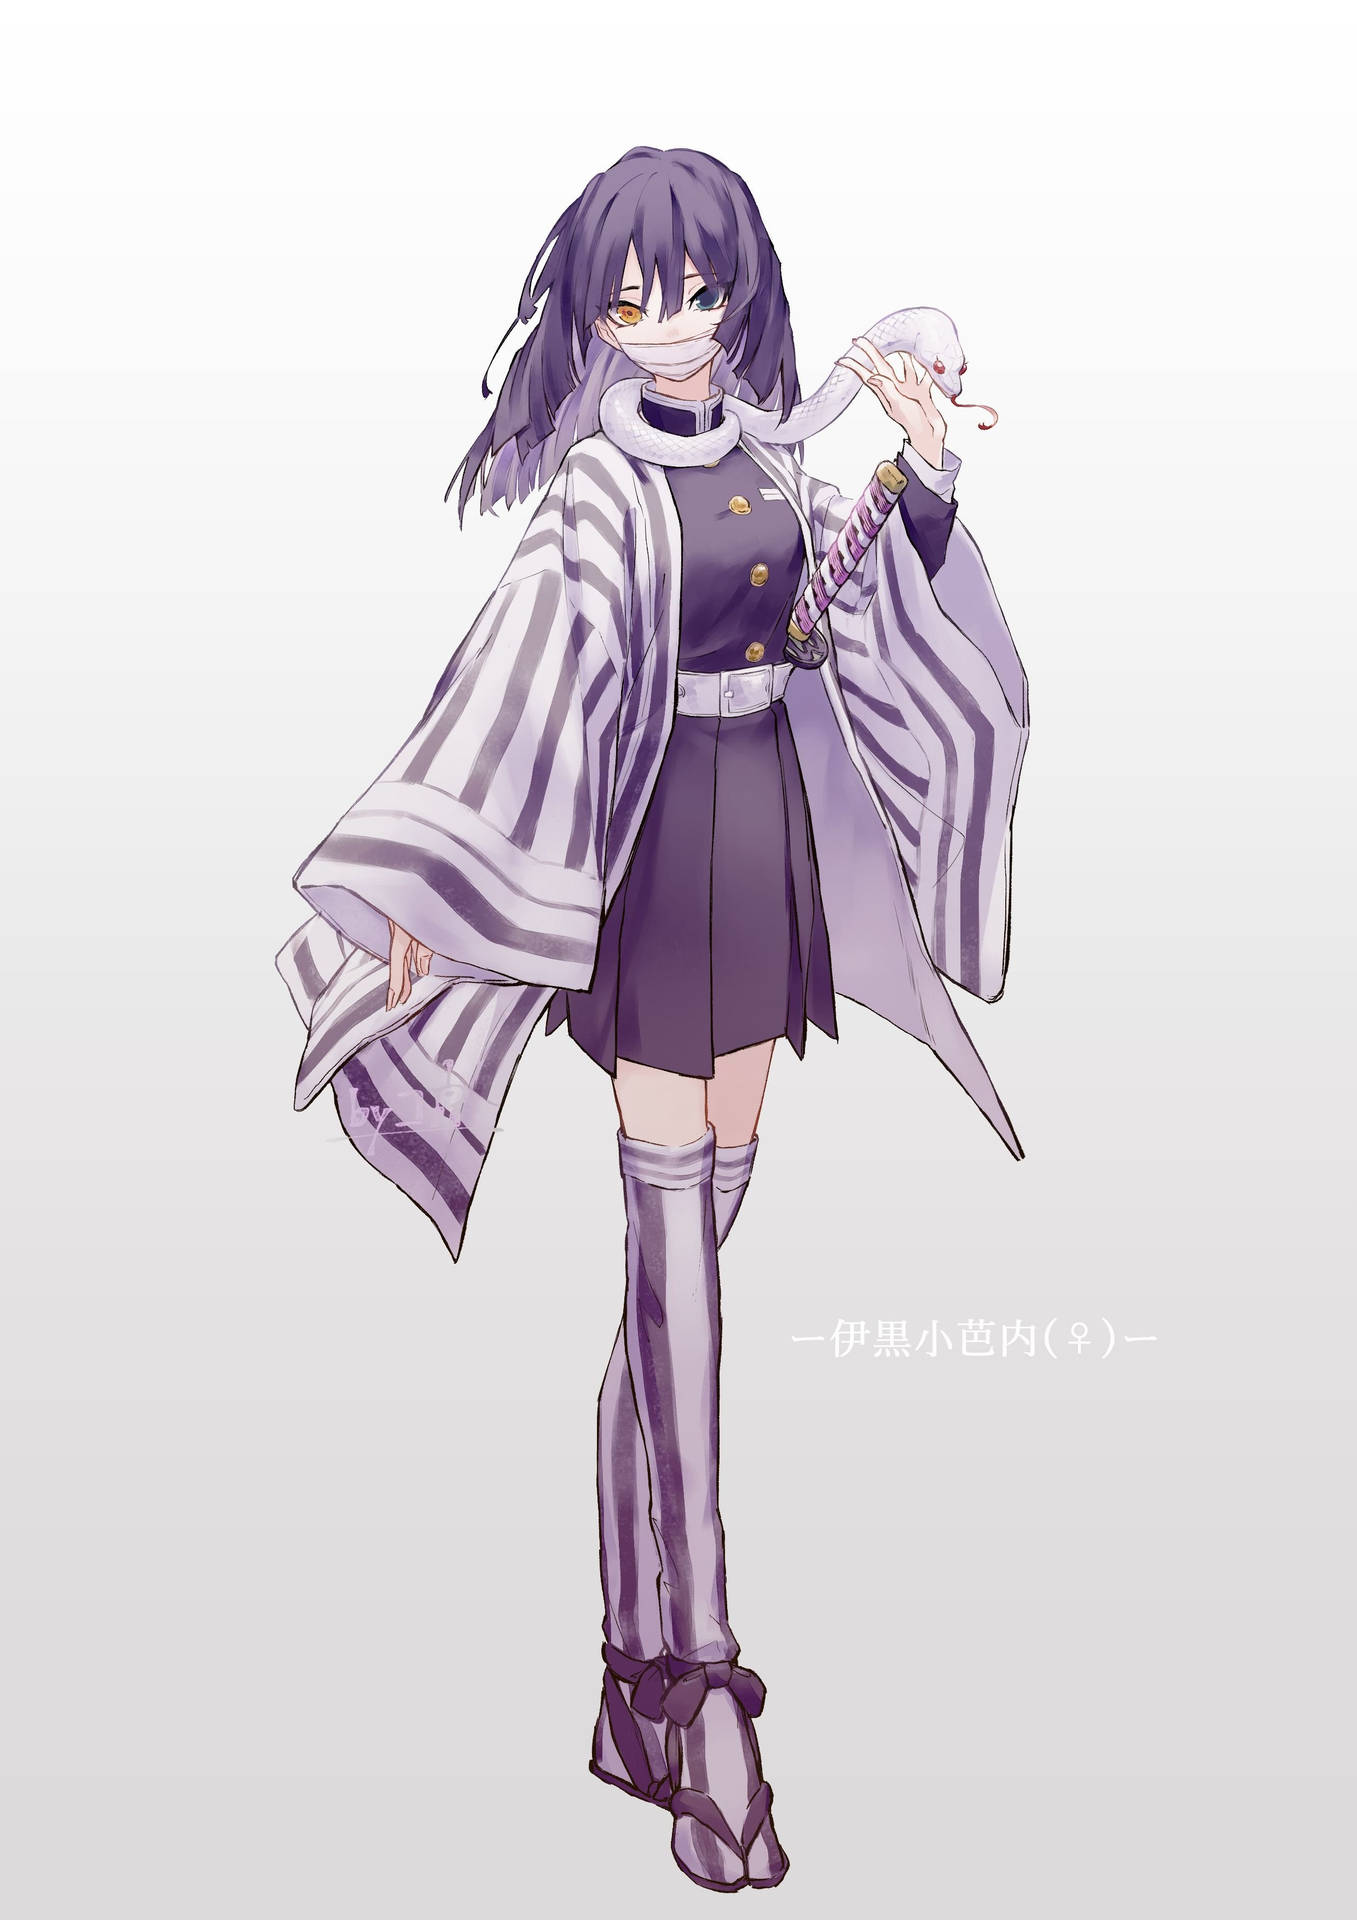 Obanai Iguro Female Version Background